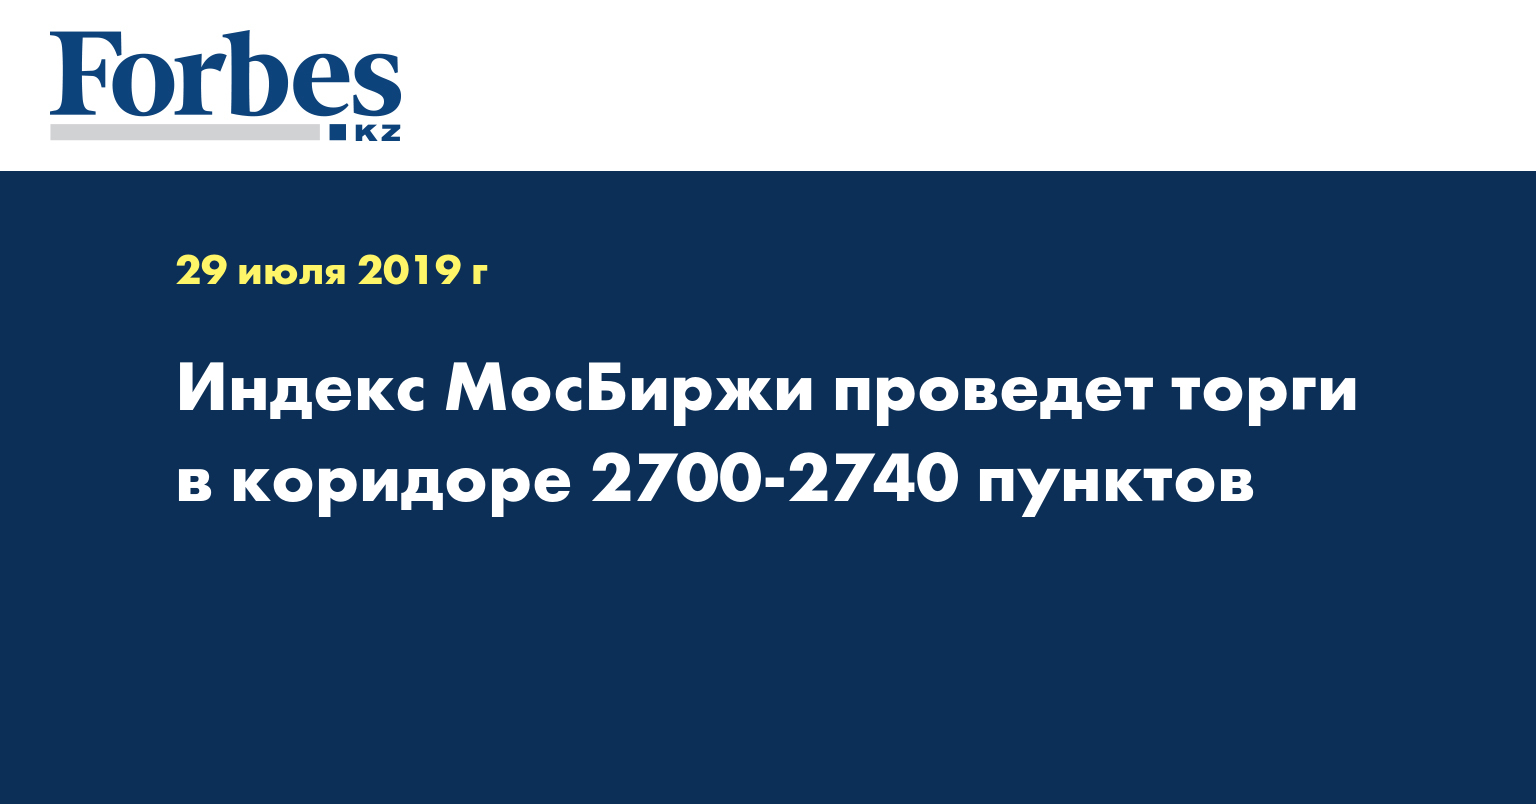 Индекс МосБиржи проведет торги в коридоре 2700-2740 пунктов